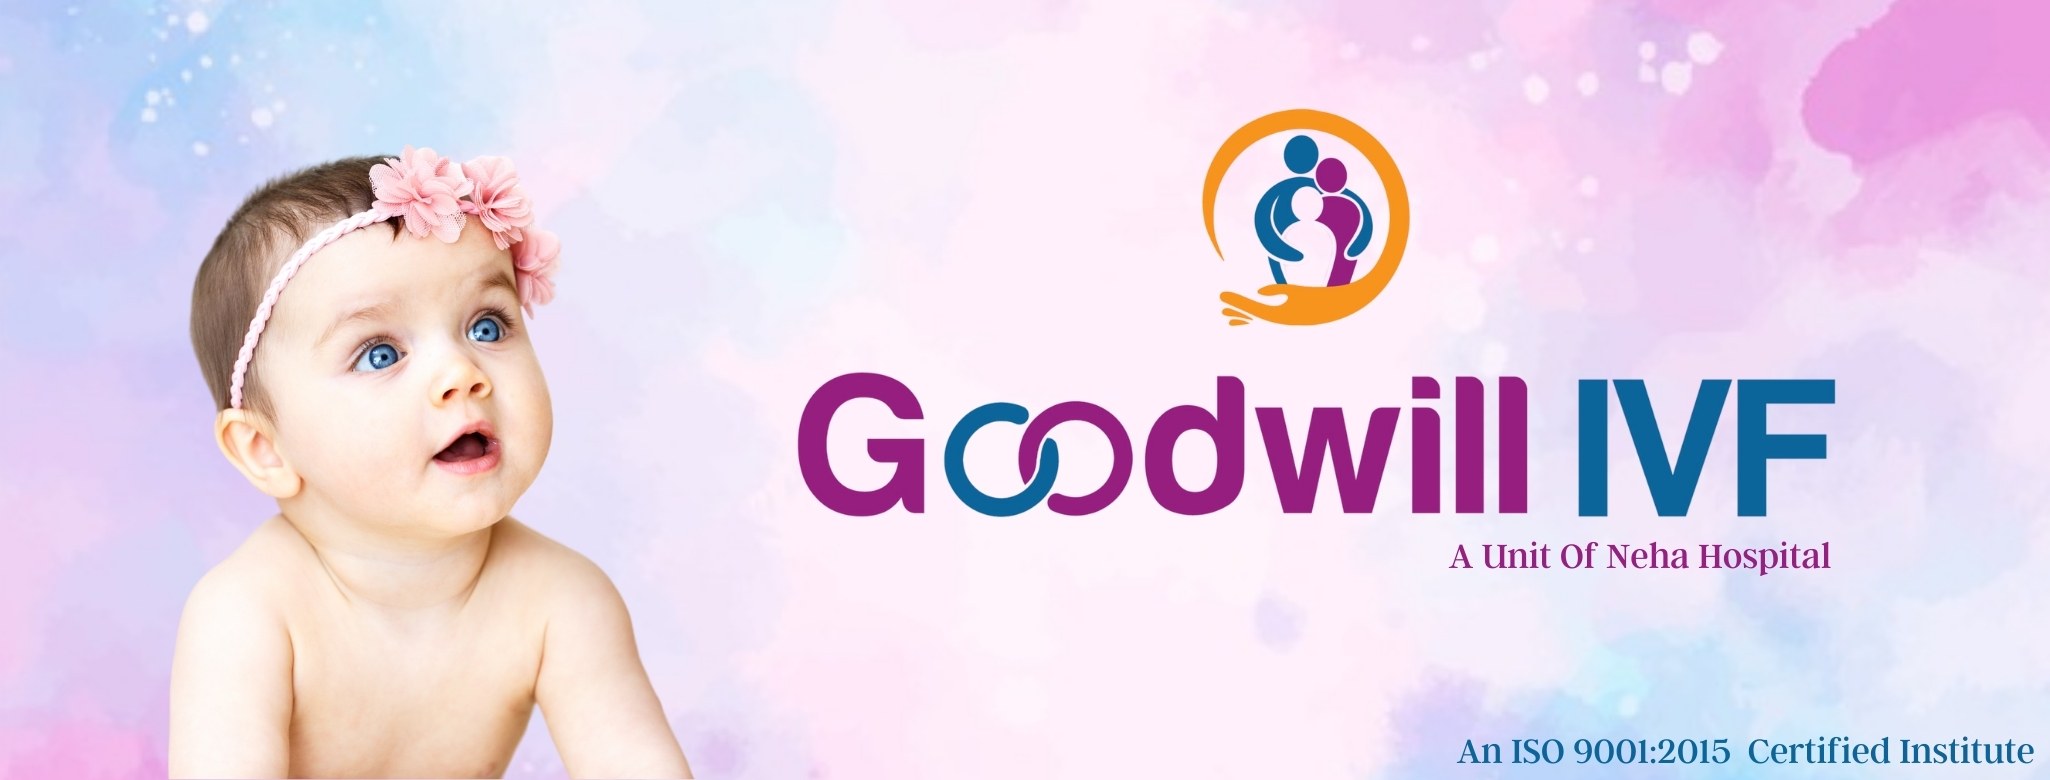 Goodwill IVF